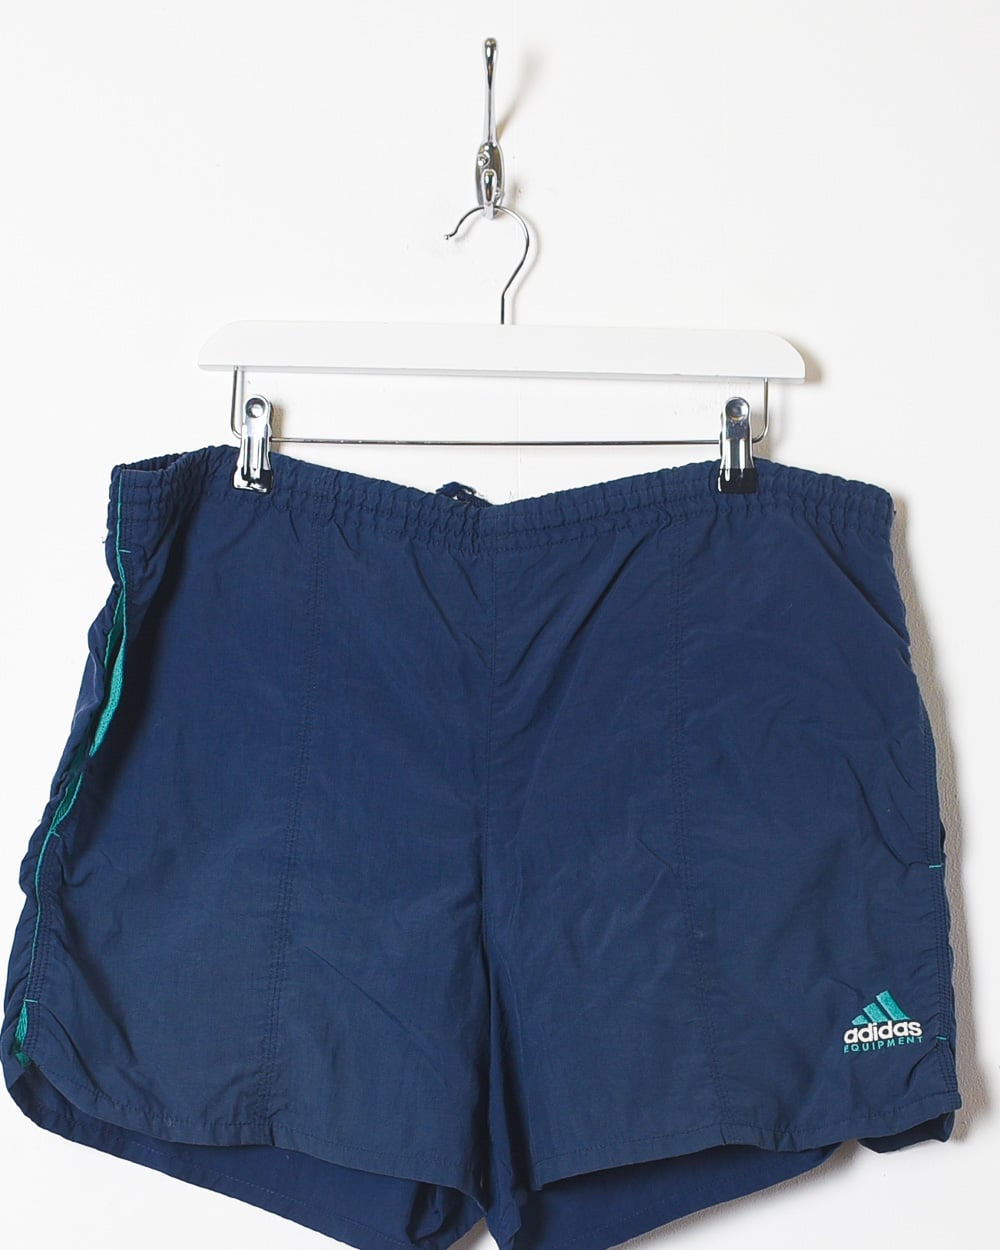 Navy Adidas Equipment Shorts - Medium